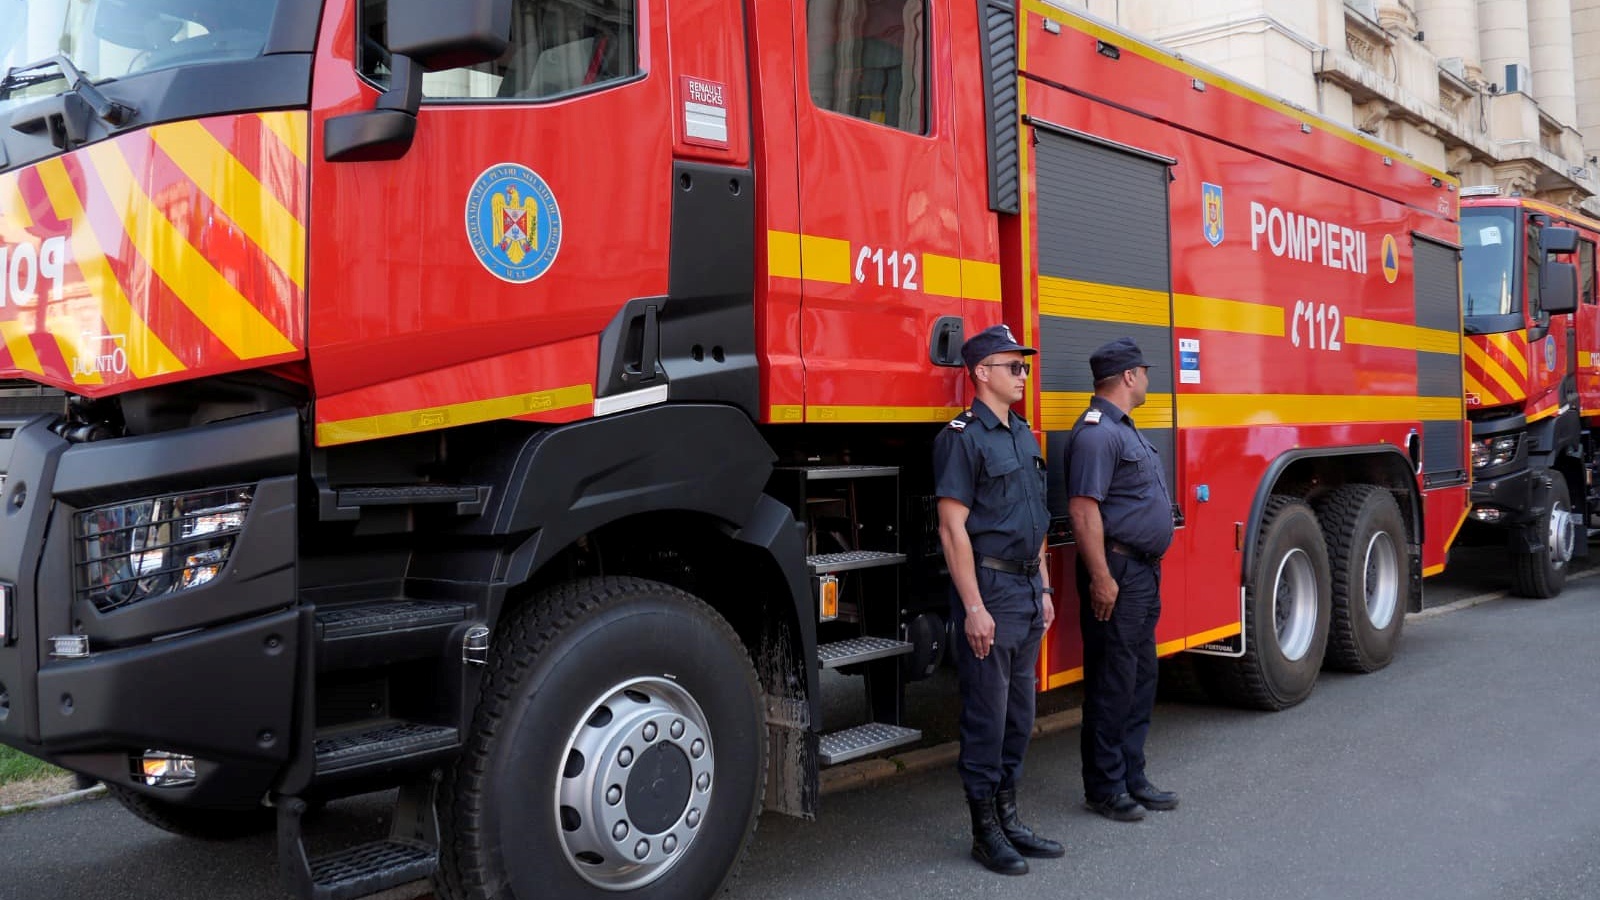 DSU Rumänien 476 Feuerwehrautos werden vom MAI gekauft